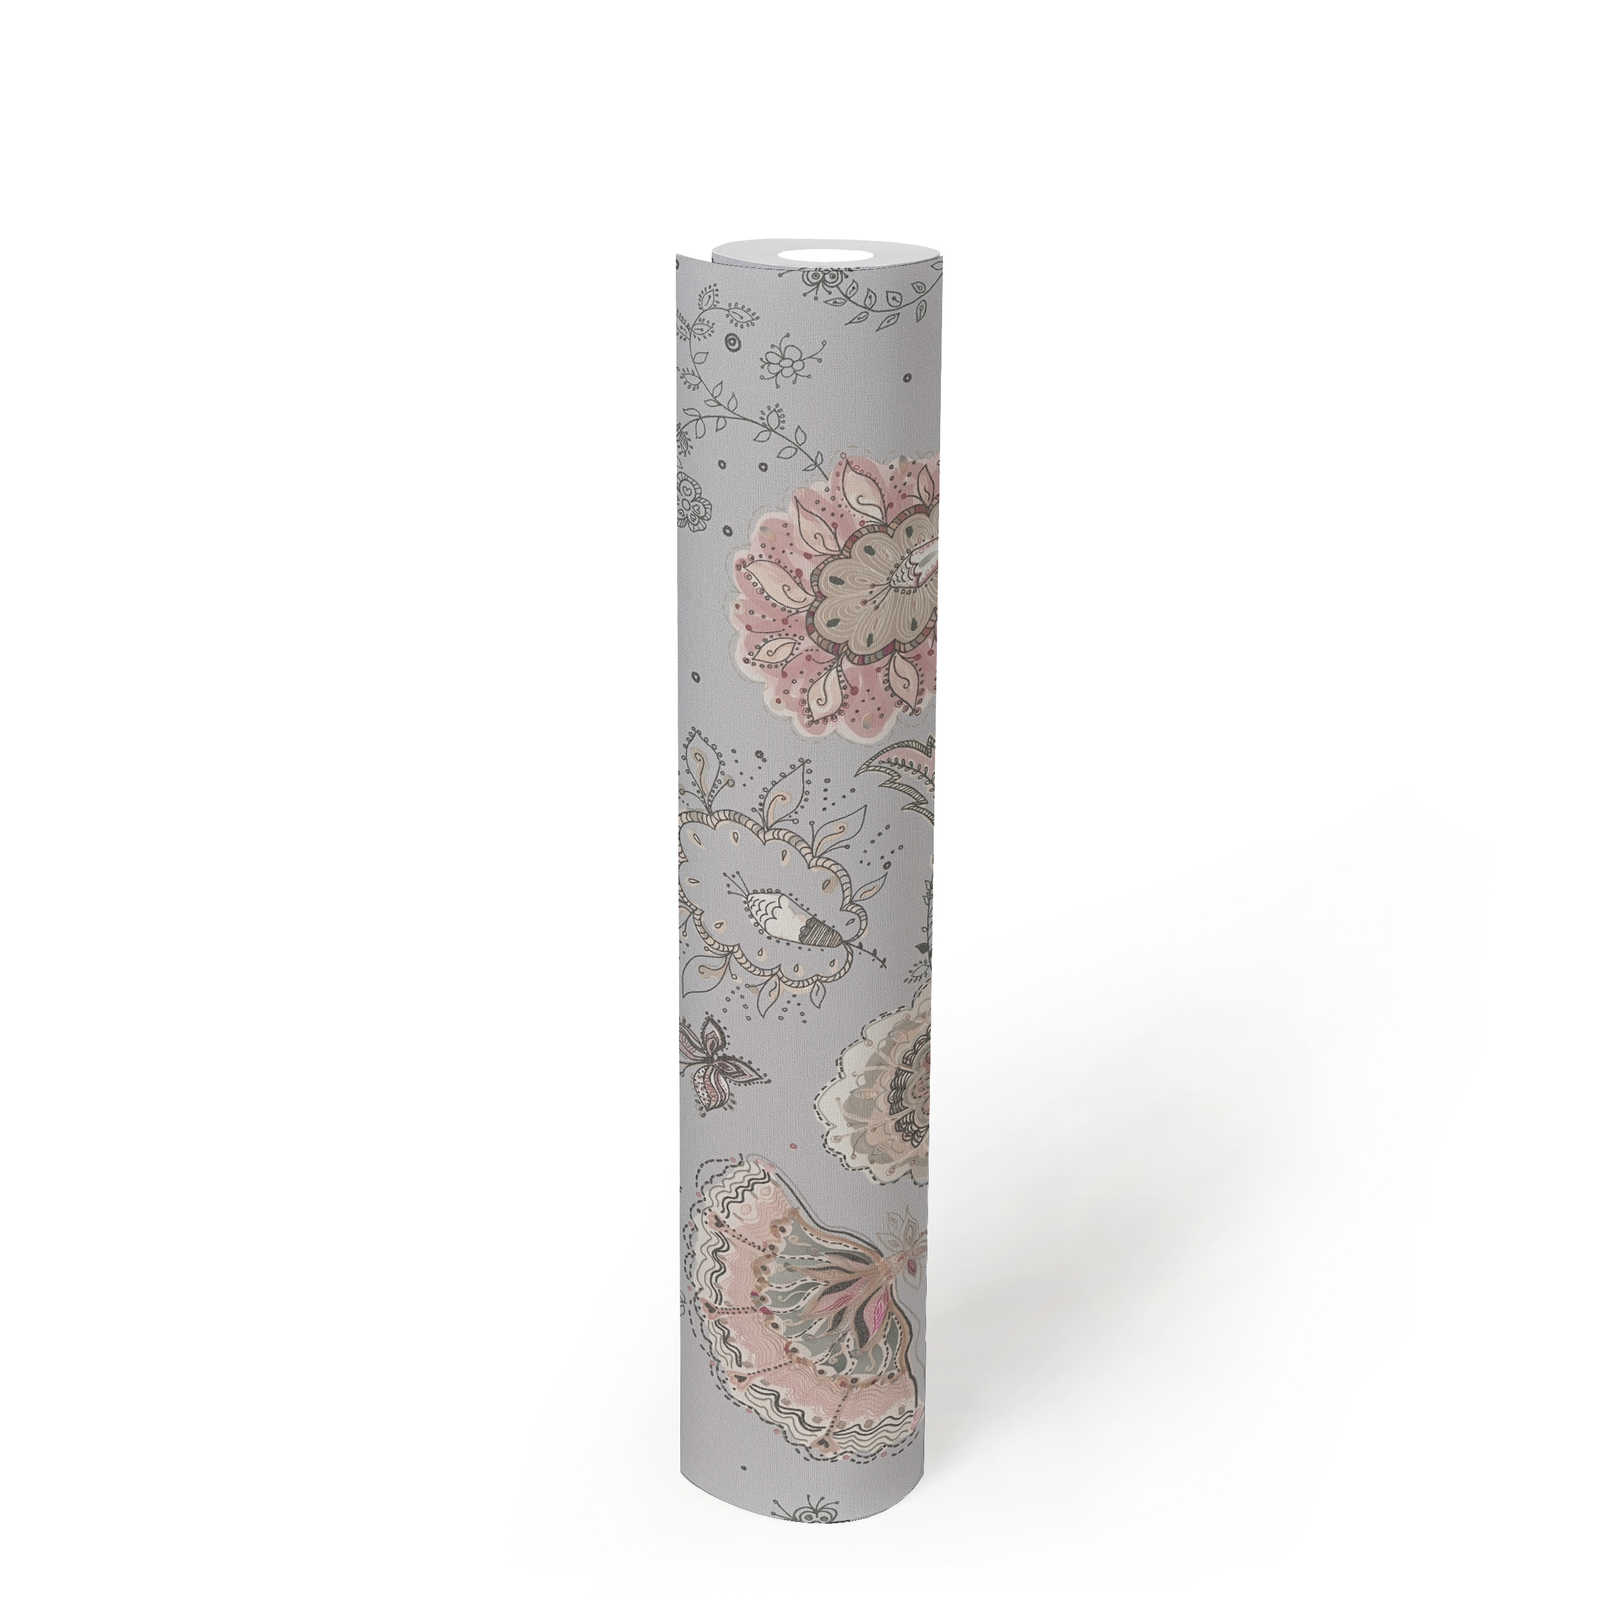             Vliestapete mit abstrakten Blumenmuster feiner Struktur – Grau, Beige, Creme
        